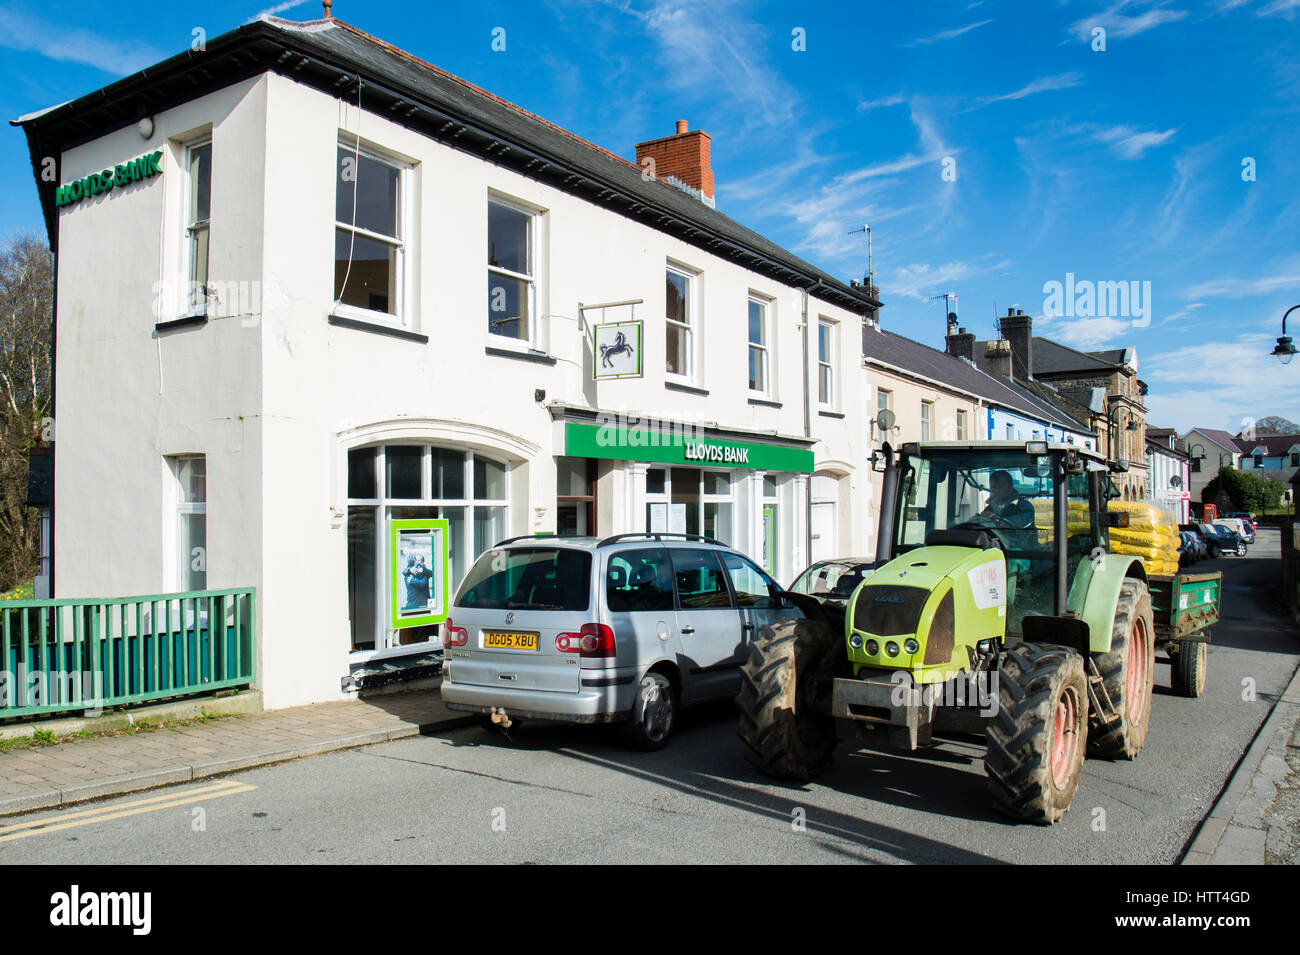 Bedrohung für die Landgemeinden in Wales: 9. März 2017 - der letzte Tag der Eröffnung der Niederlassung der Lloyds Bank in der kleinen ländlichen Tregaron Dorf Ceredigion Wales UK Stockfoto